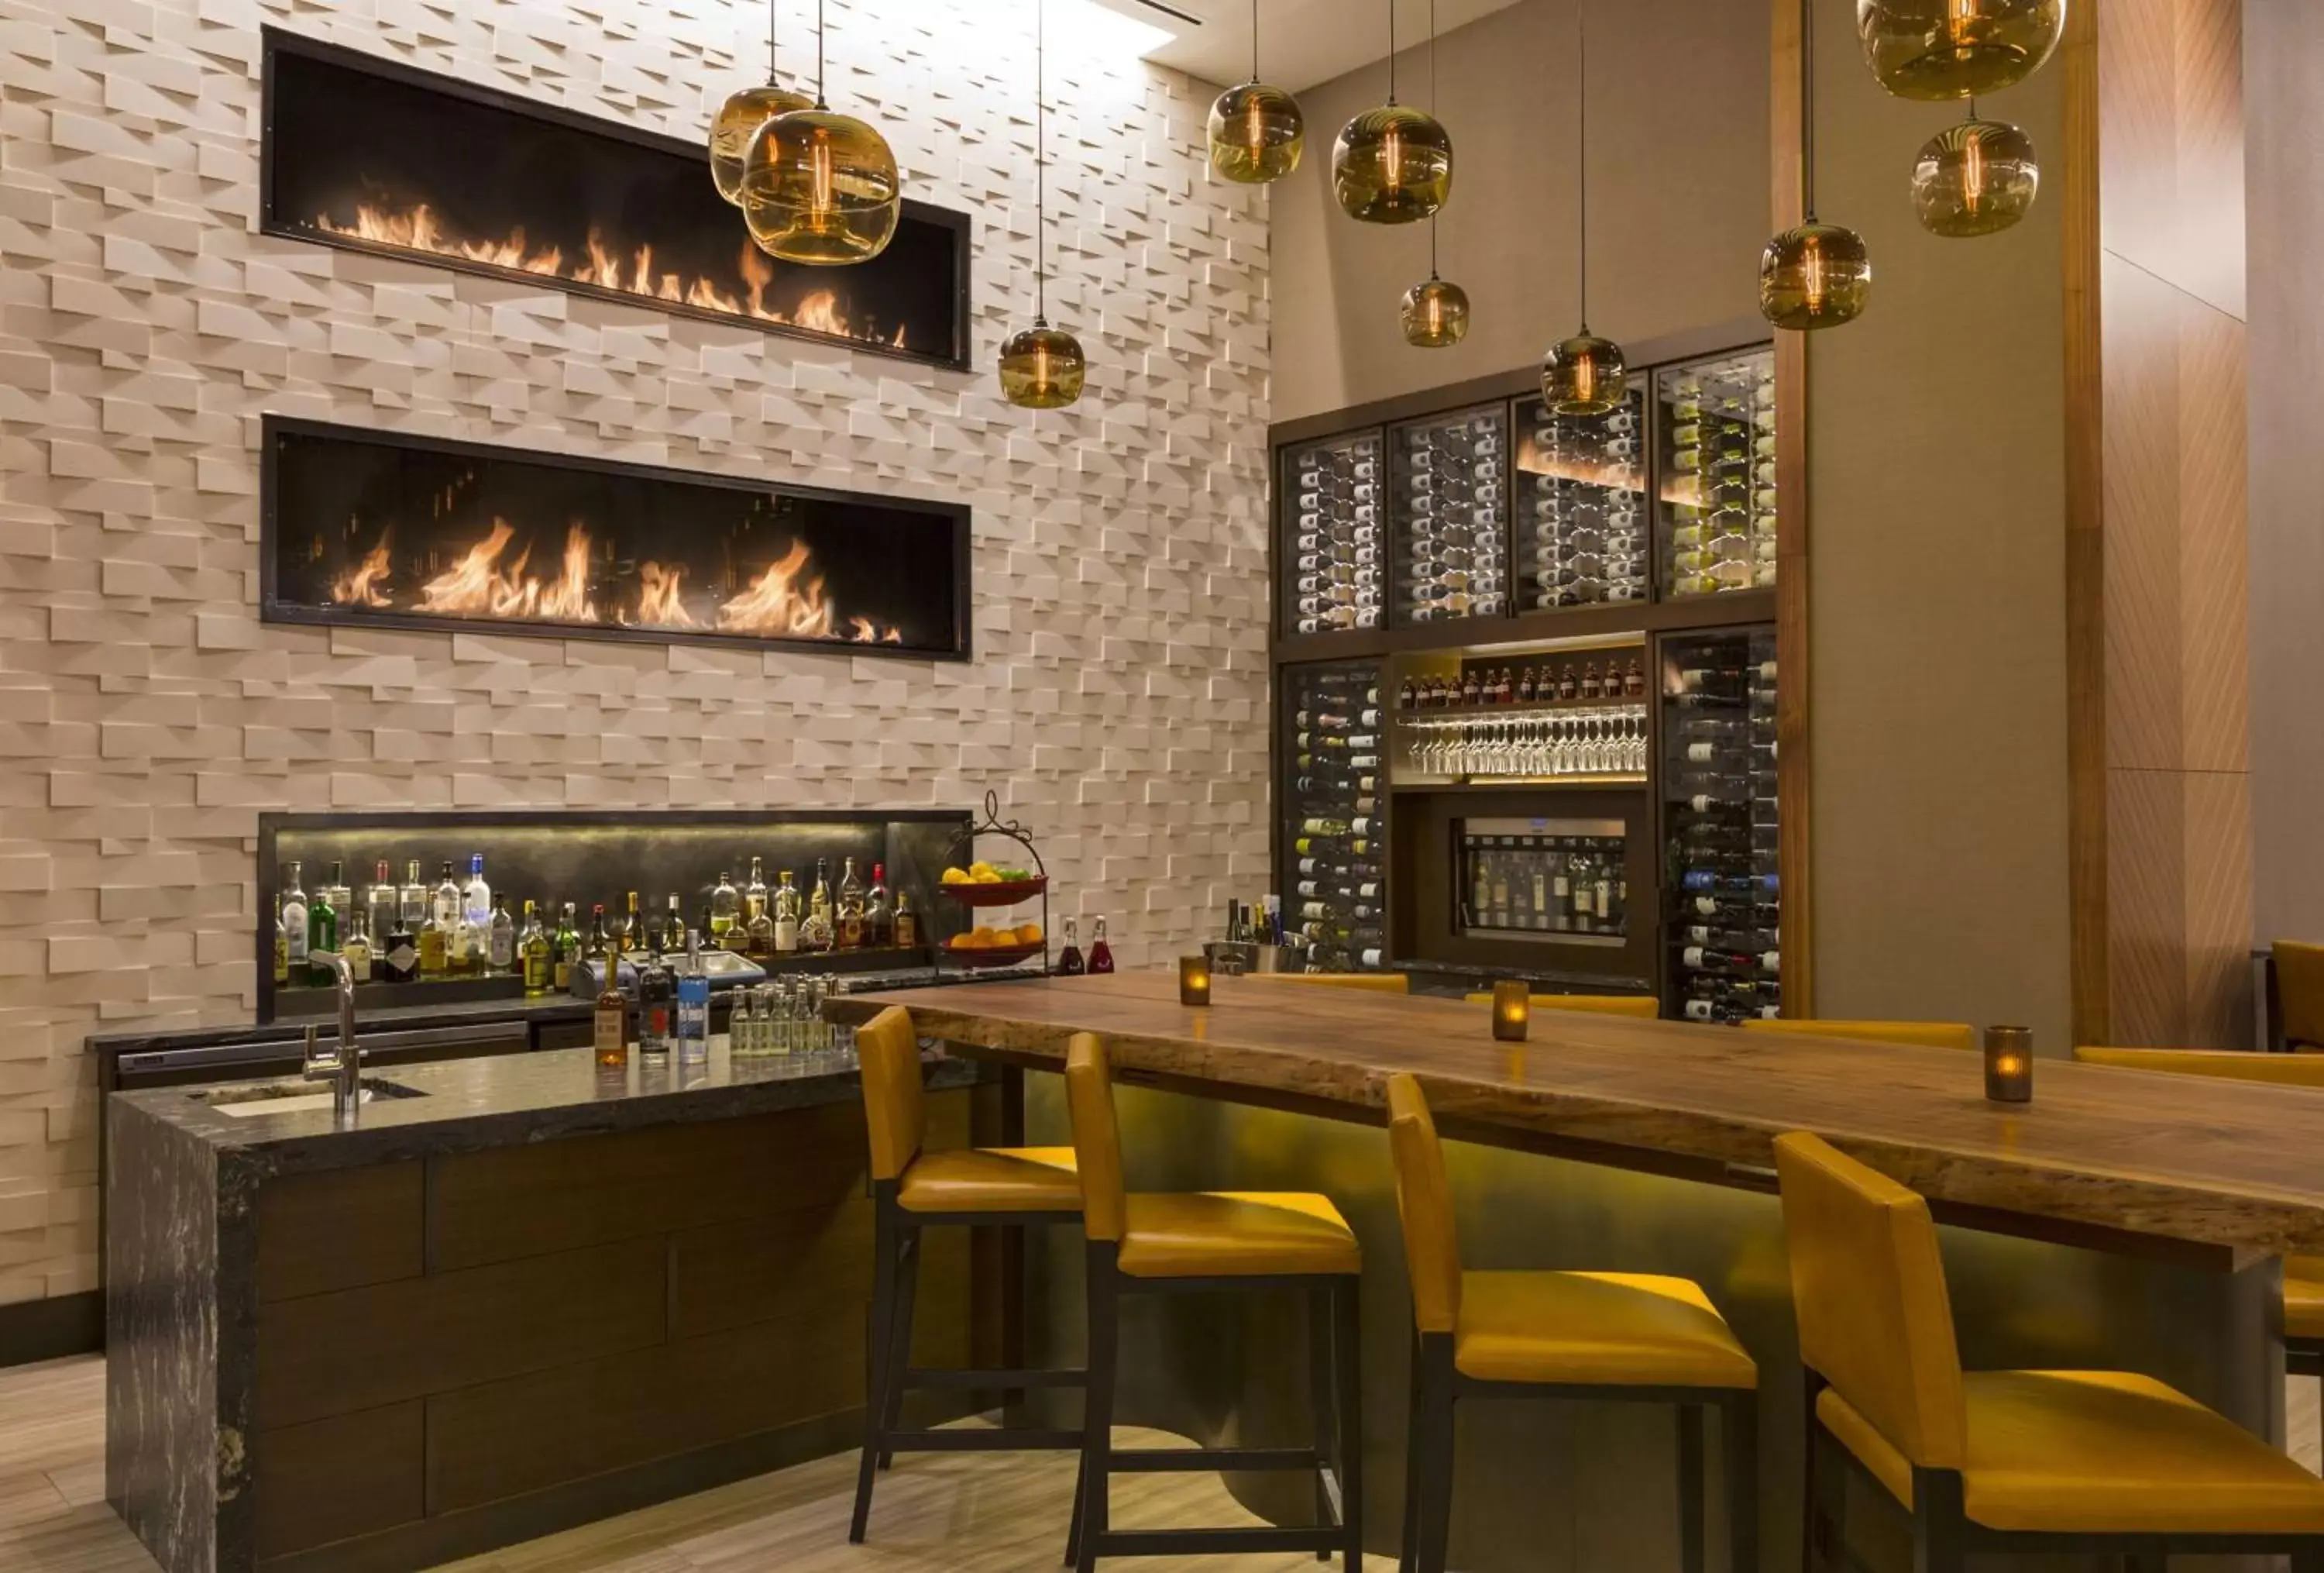 Lounge or bar, Restaurant/Places to Eat in Grand Hyatt Denver